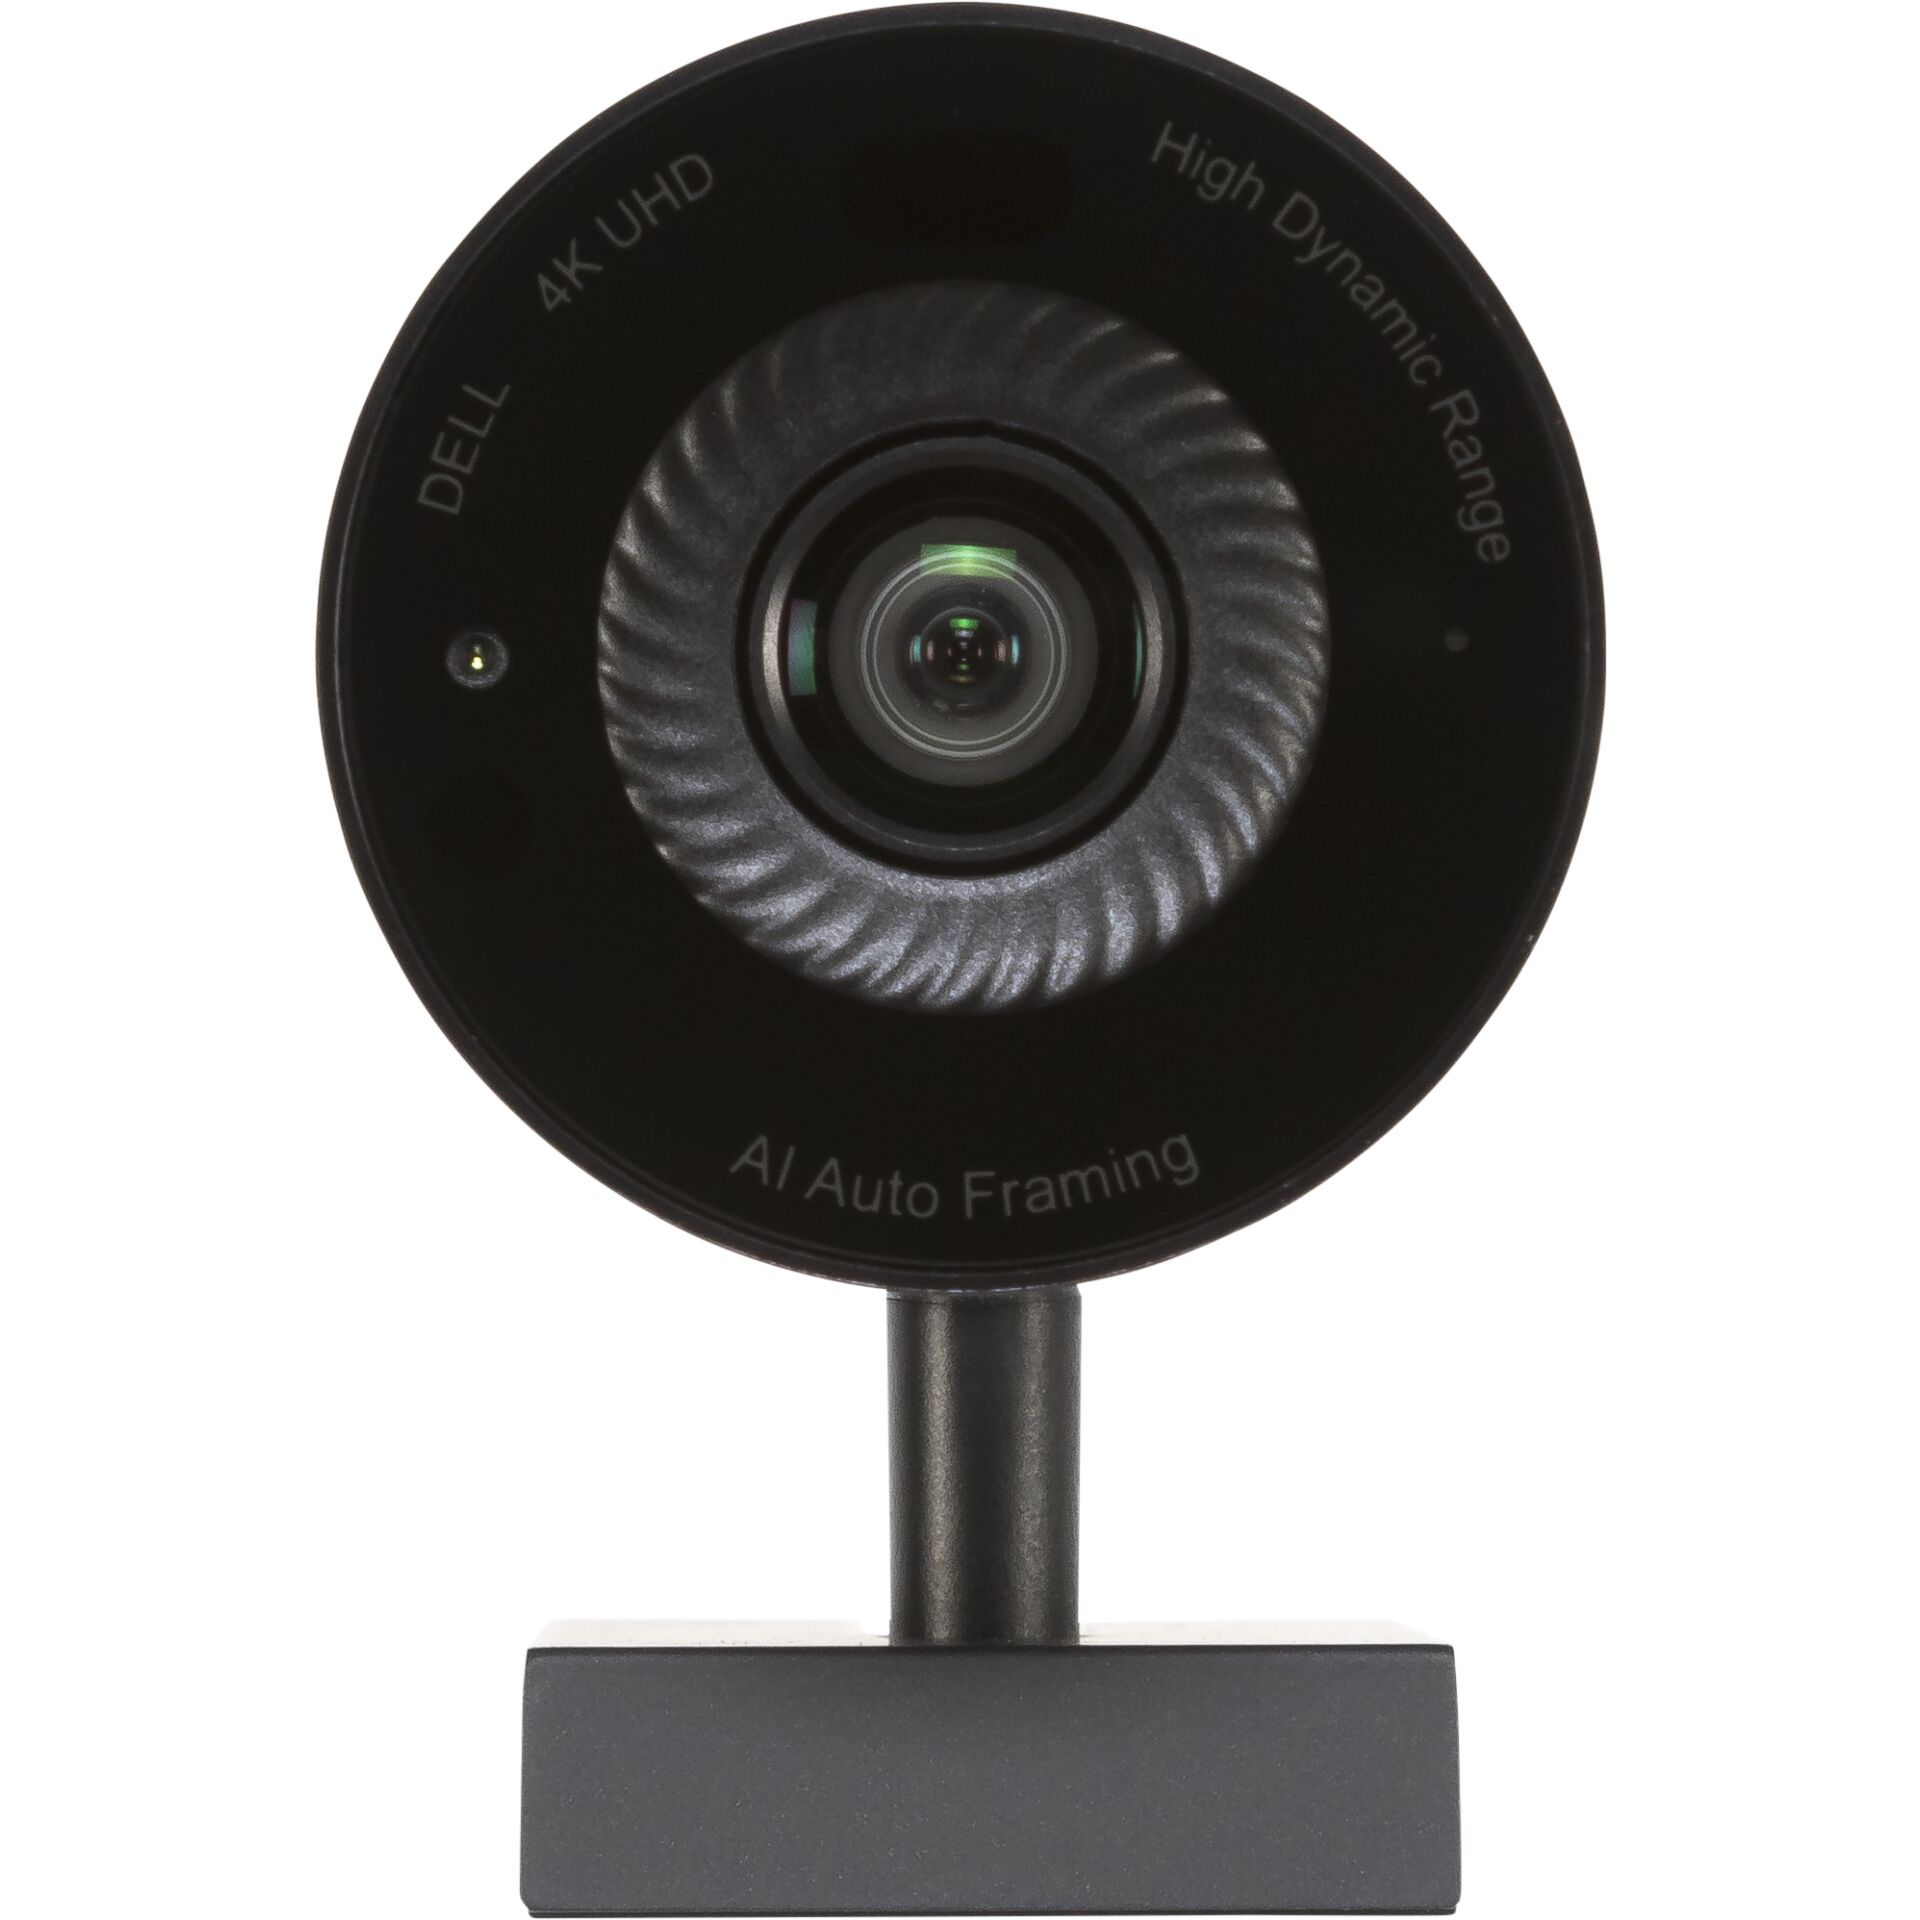 Dell WB7022 UltraSharp Webcam